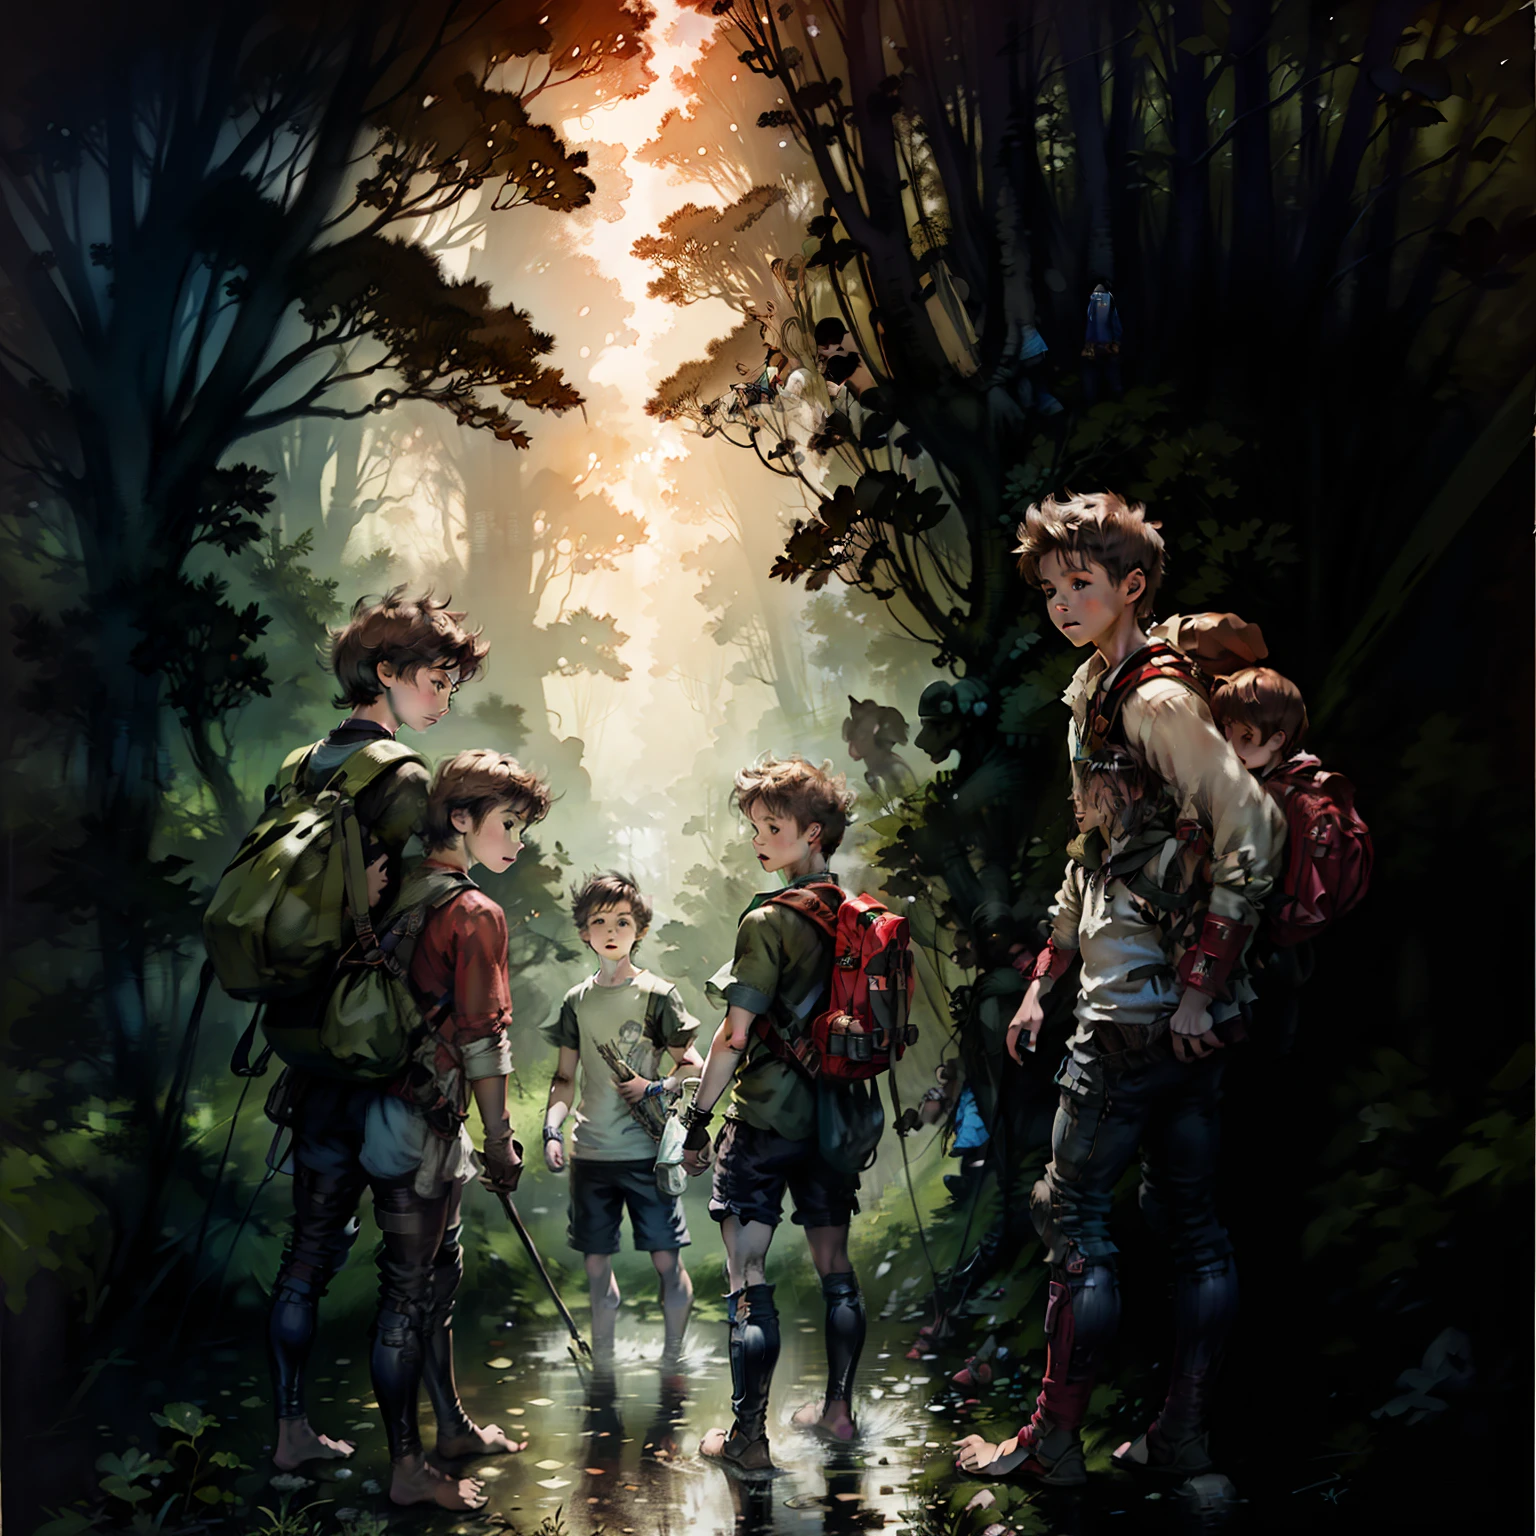 两根黑头发, 11 岁男孩陪同三名孩子进入充满溪流和障碍物的陌生森林, 三个孩子穿着旧衣服，光着脚，两个 11 岁的男孩背着背包, 非常详细的图像, 背面图像